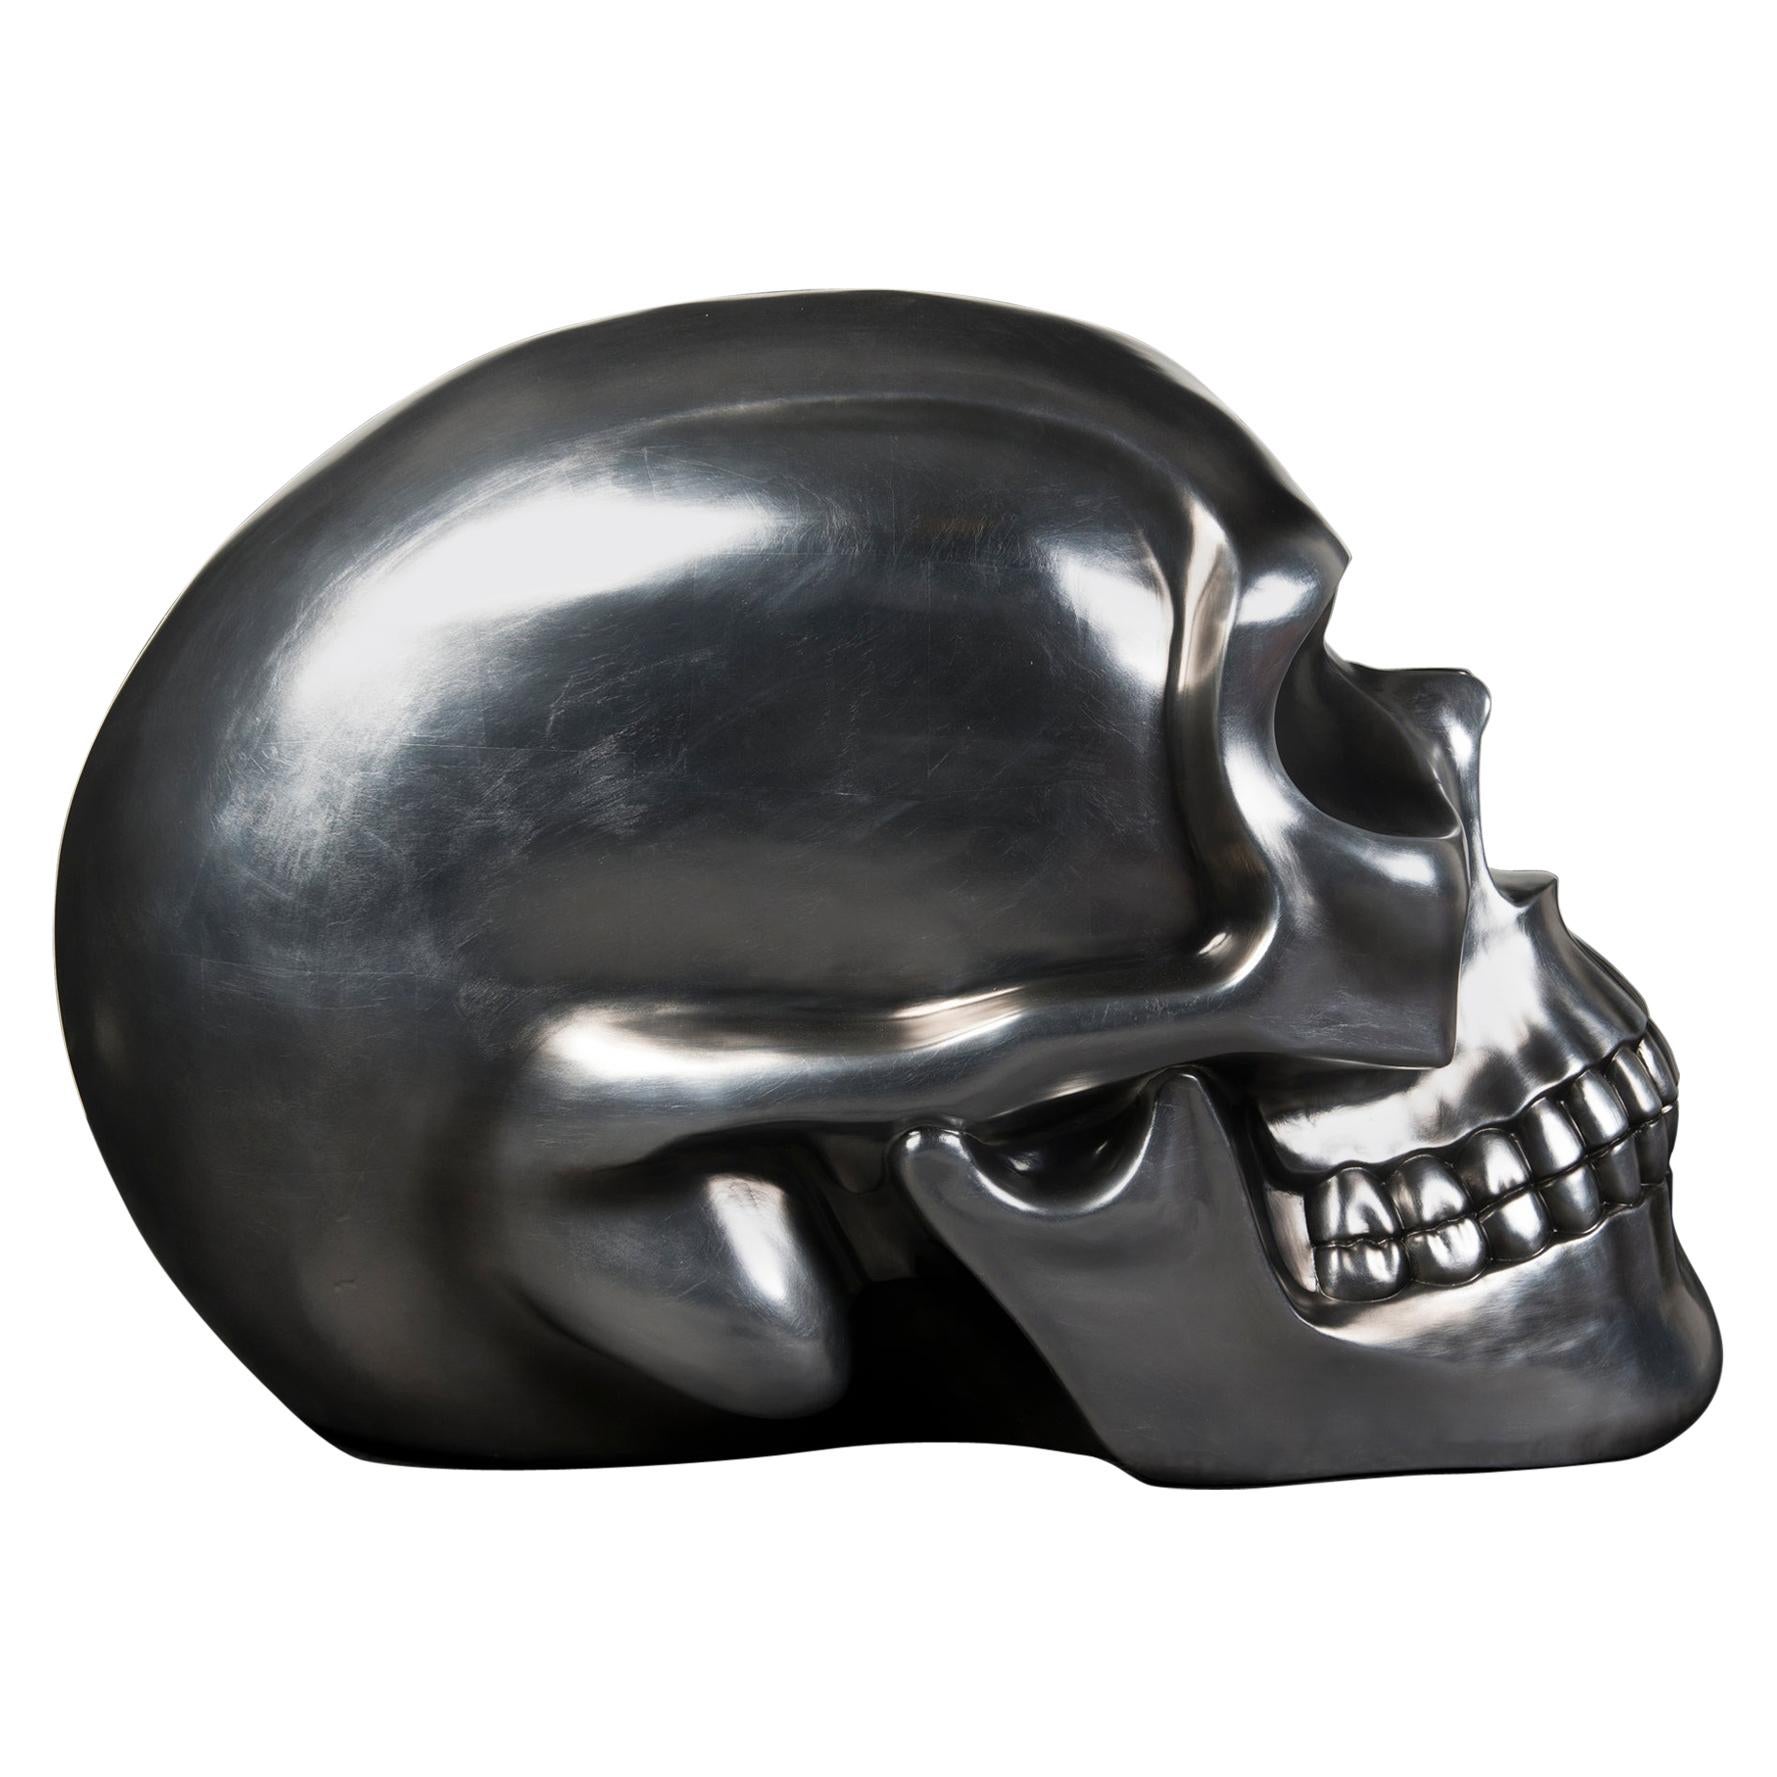 The Skull, Keramik, Silber weichschwarz, Italien